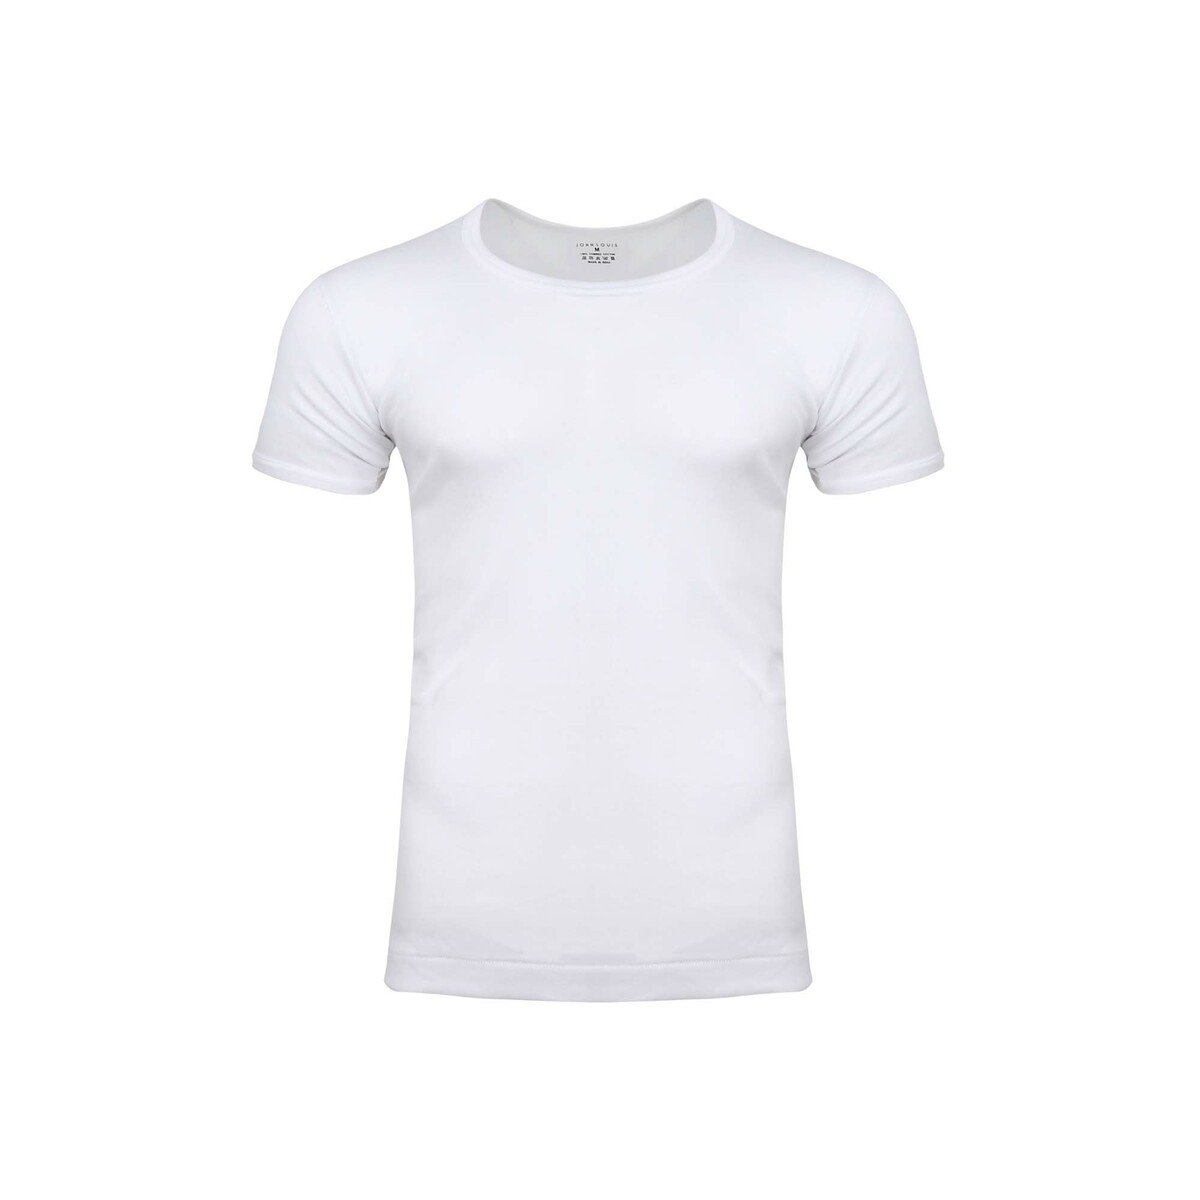 John Louis Men's U Neck T-Shirt 3Pcs Pack White XX-Large